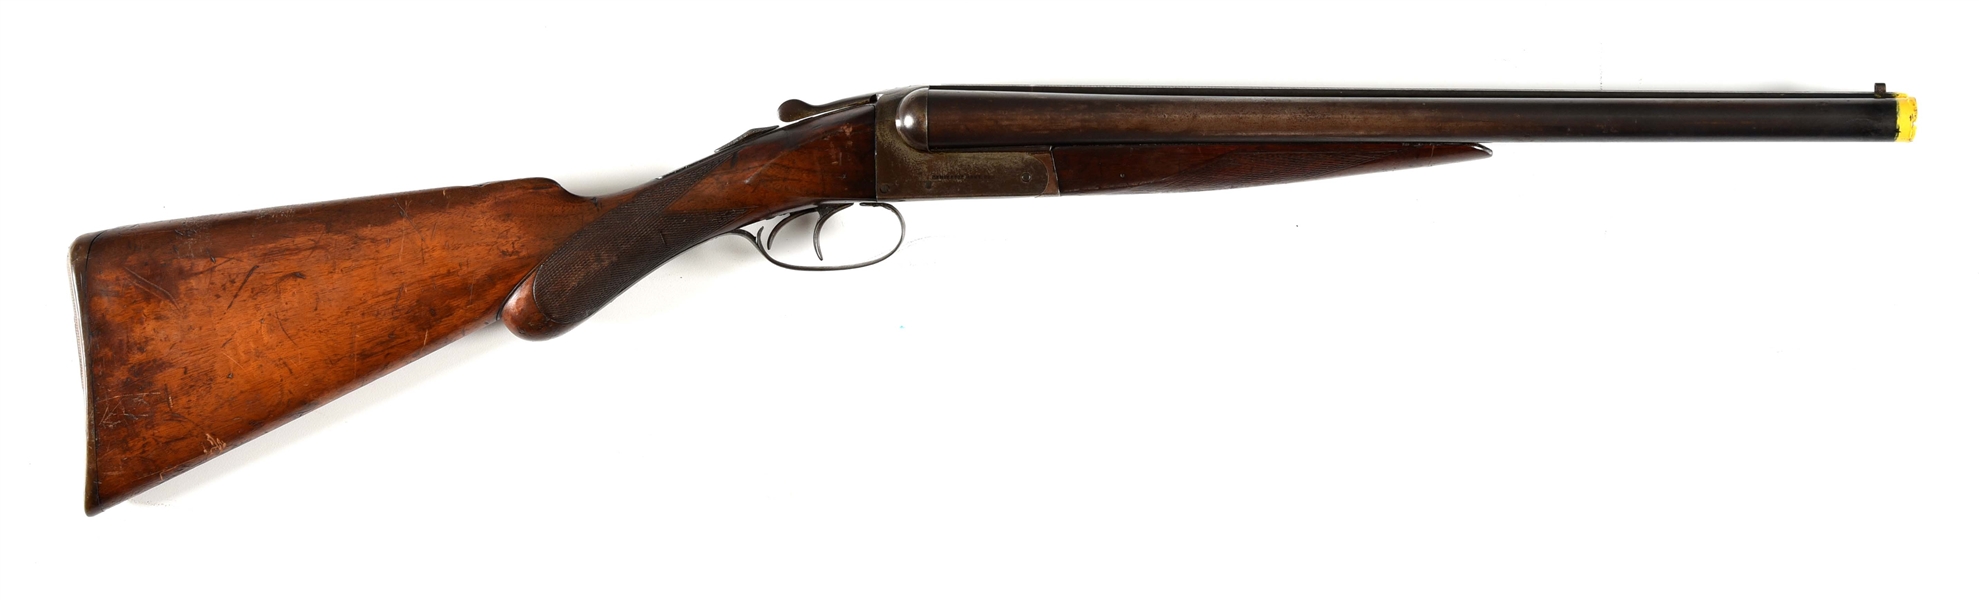 (C) REMINGTON MODEL 1900 SIDE BY SIDE COACH GUN.